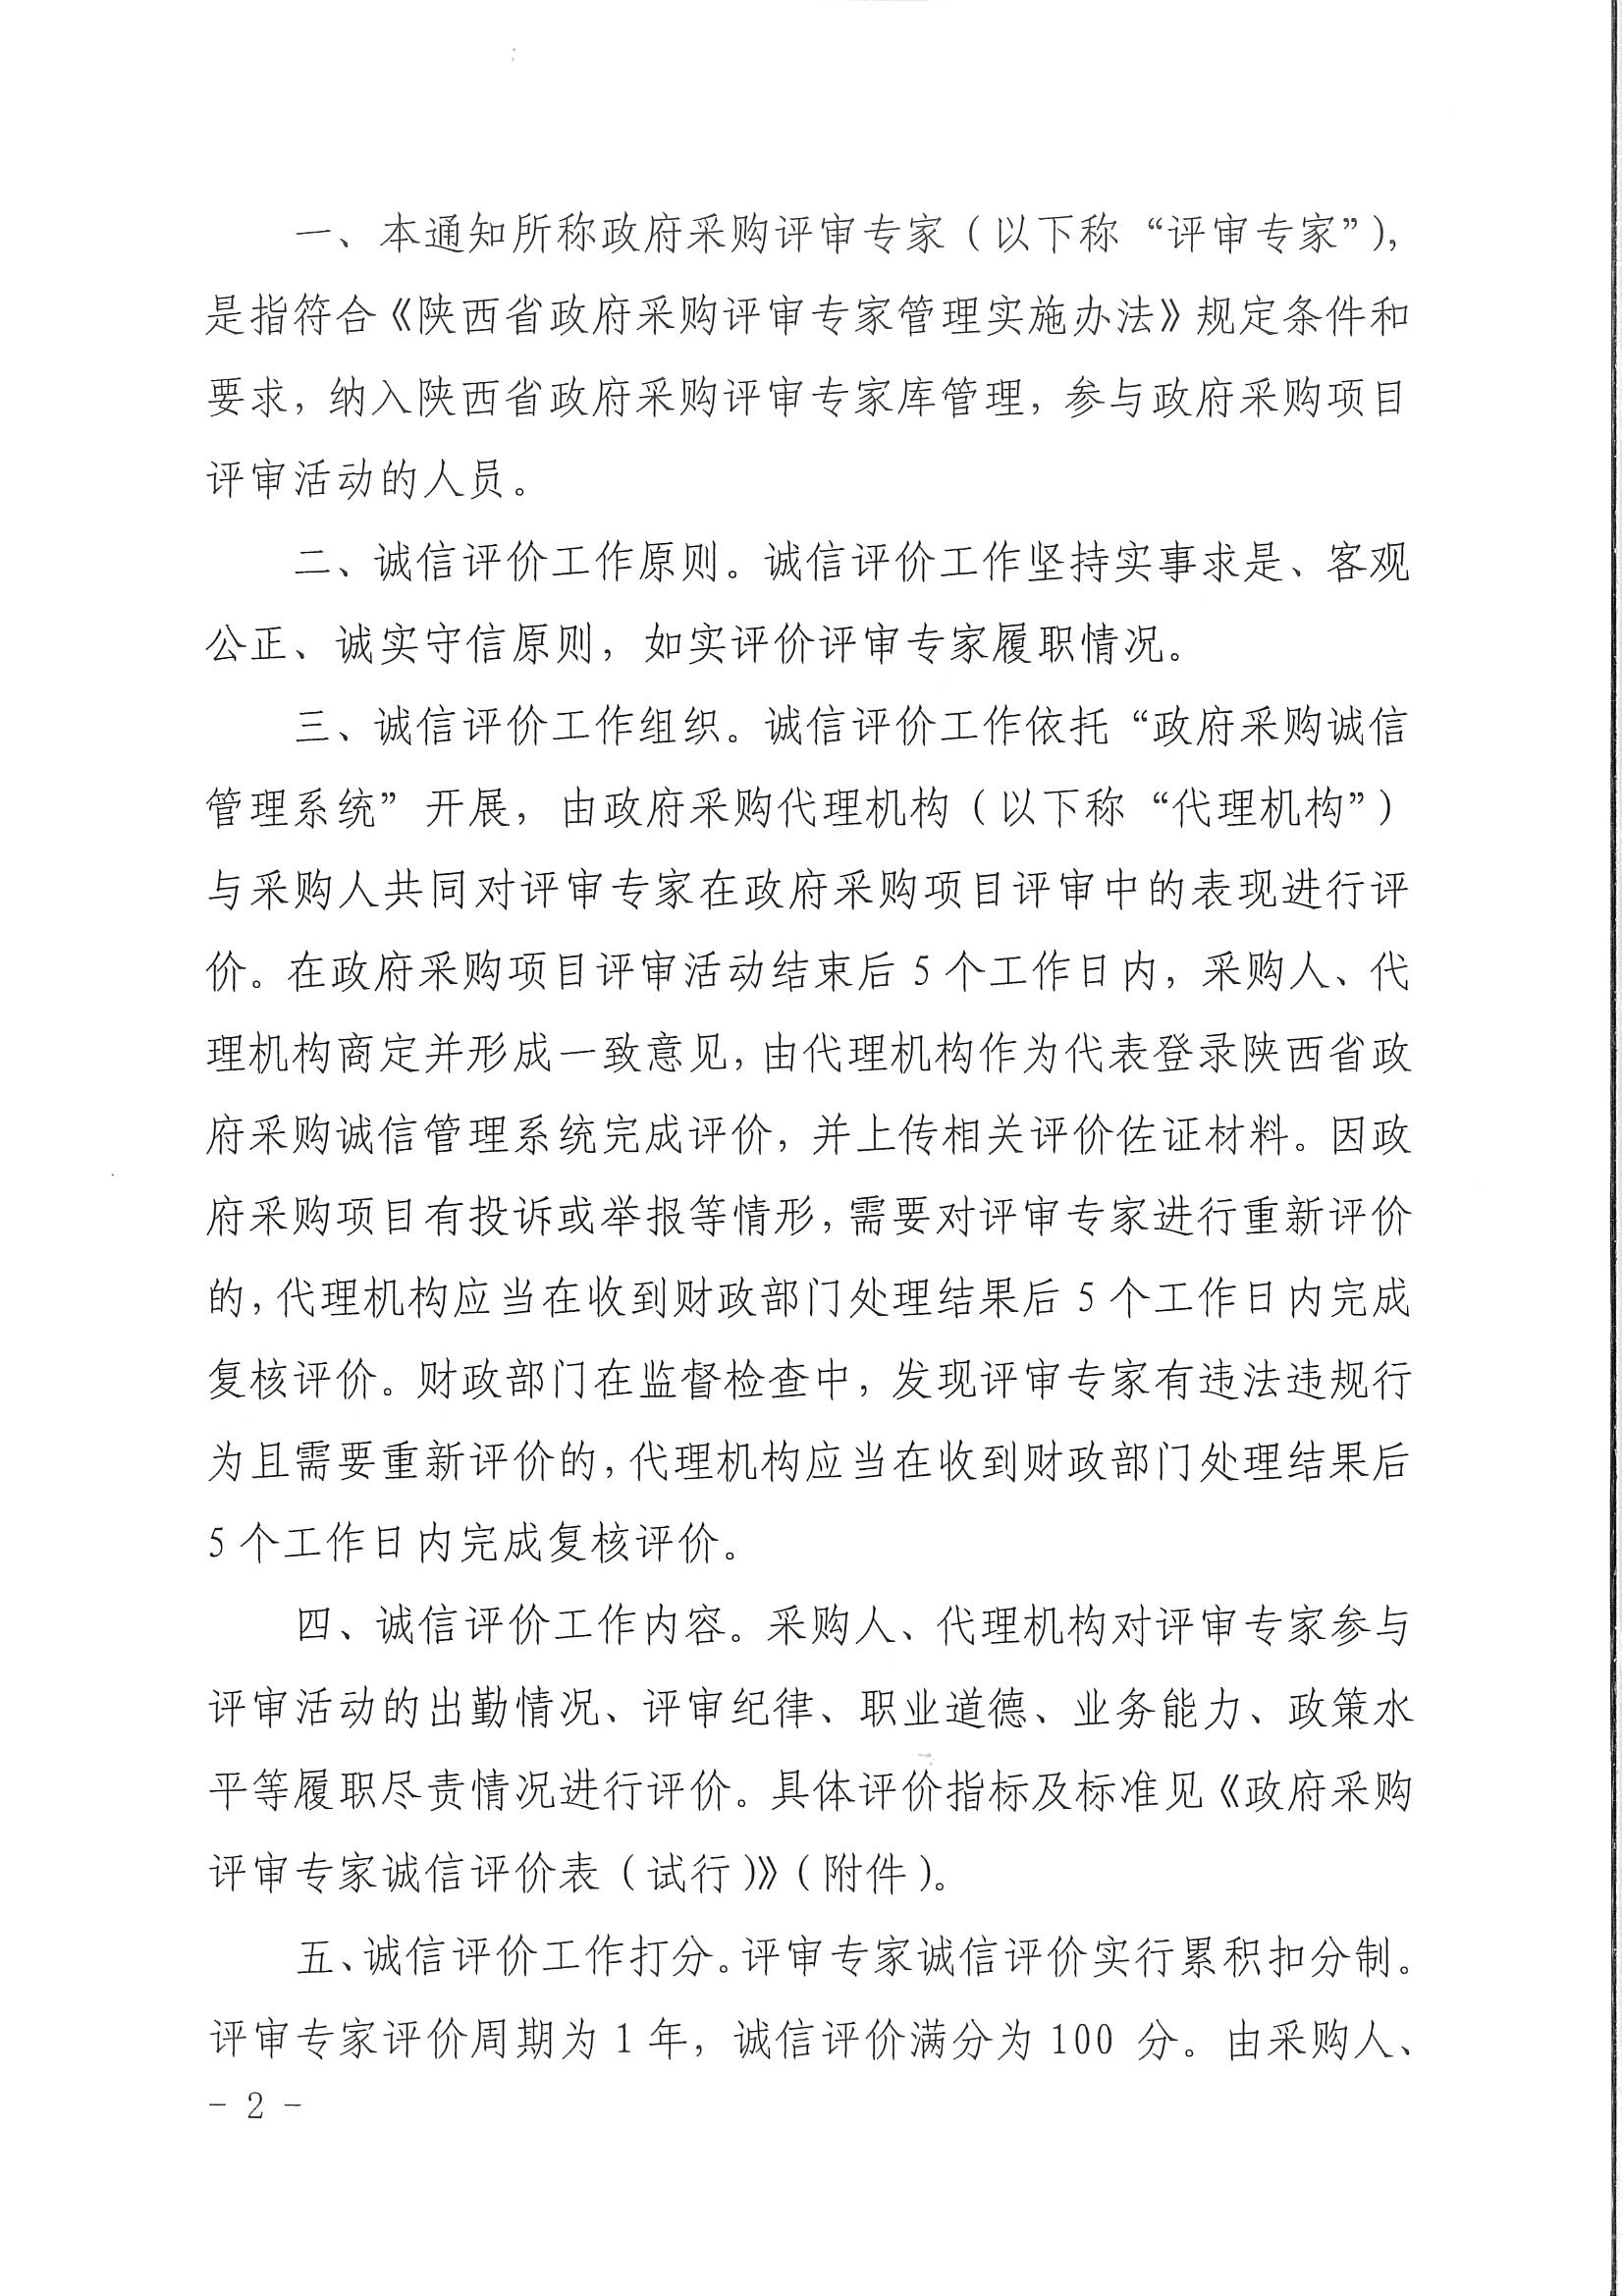 陕西省财政厅关于开展政府采购评审专家诚信评价工作的通知(图2)